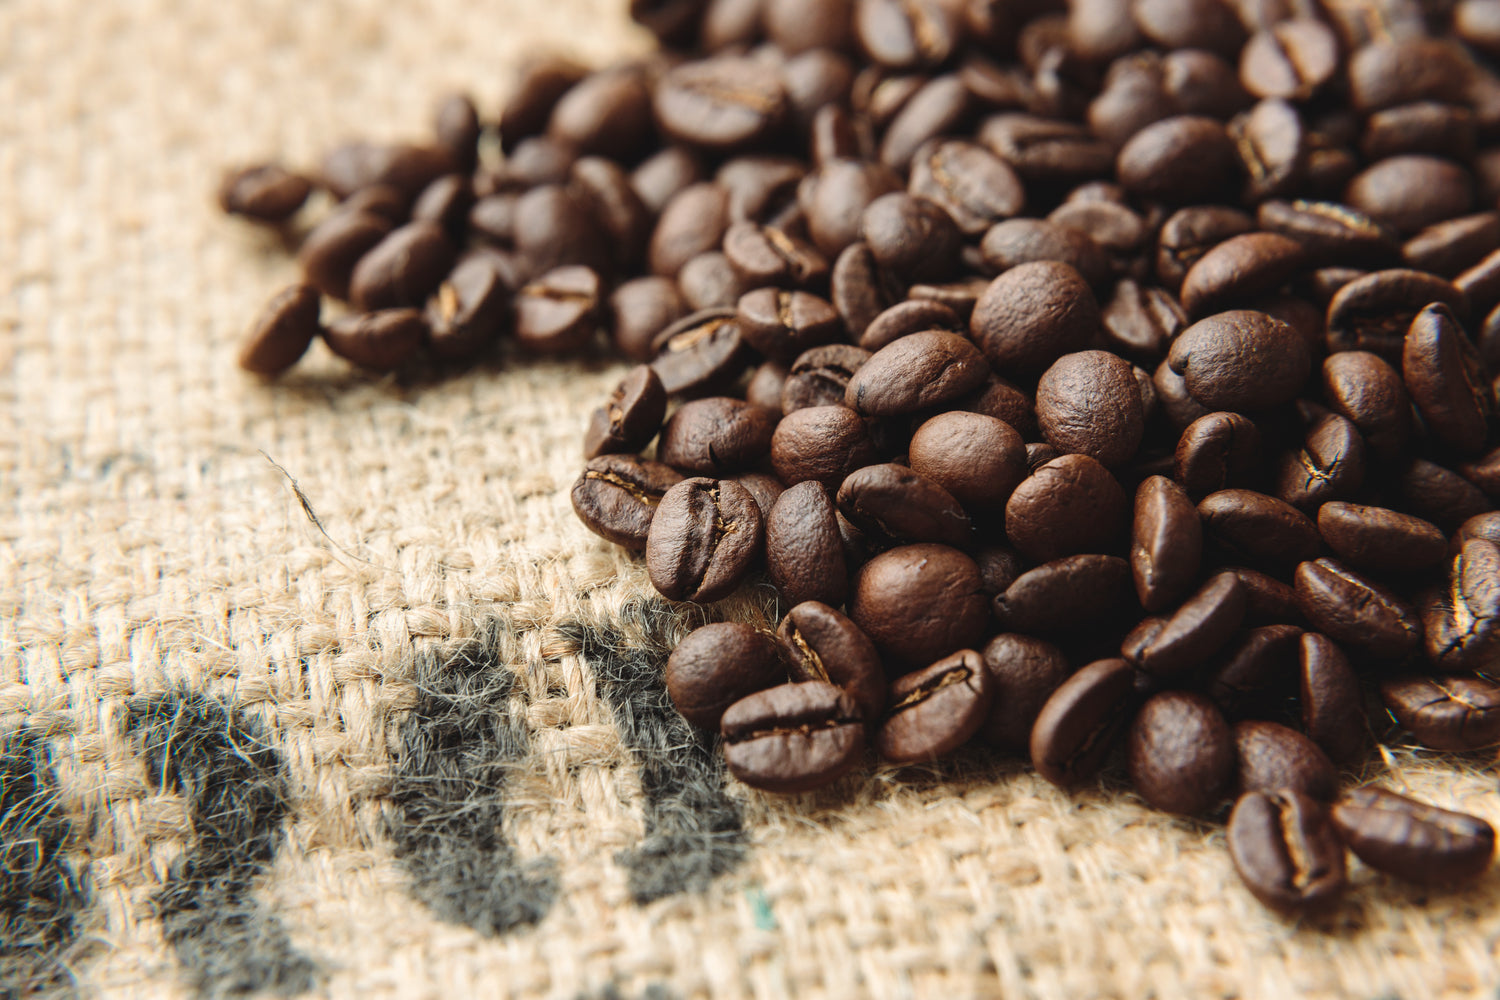 COFFEE ROASTERY101では、SCAが定めるスペシャルティコーヒーの基準と独自の品質基準をクリアした欠点豆の混入が極めて少ない最高品質のコーヒー豆のみを買い付けしています。さらに、コーヒー豆の品質ムラを防ぐため焙煎前後にハンドピッキングで欠点豆を除去し、鮮度の低下を極力抑えるためご注文いただいてから最適な焙煎度合いでコーヒー豆を焙煎しています。